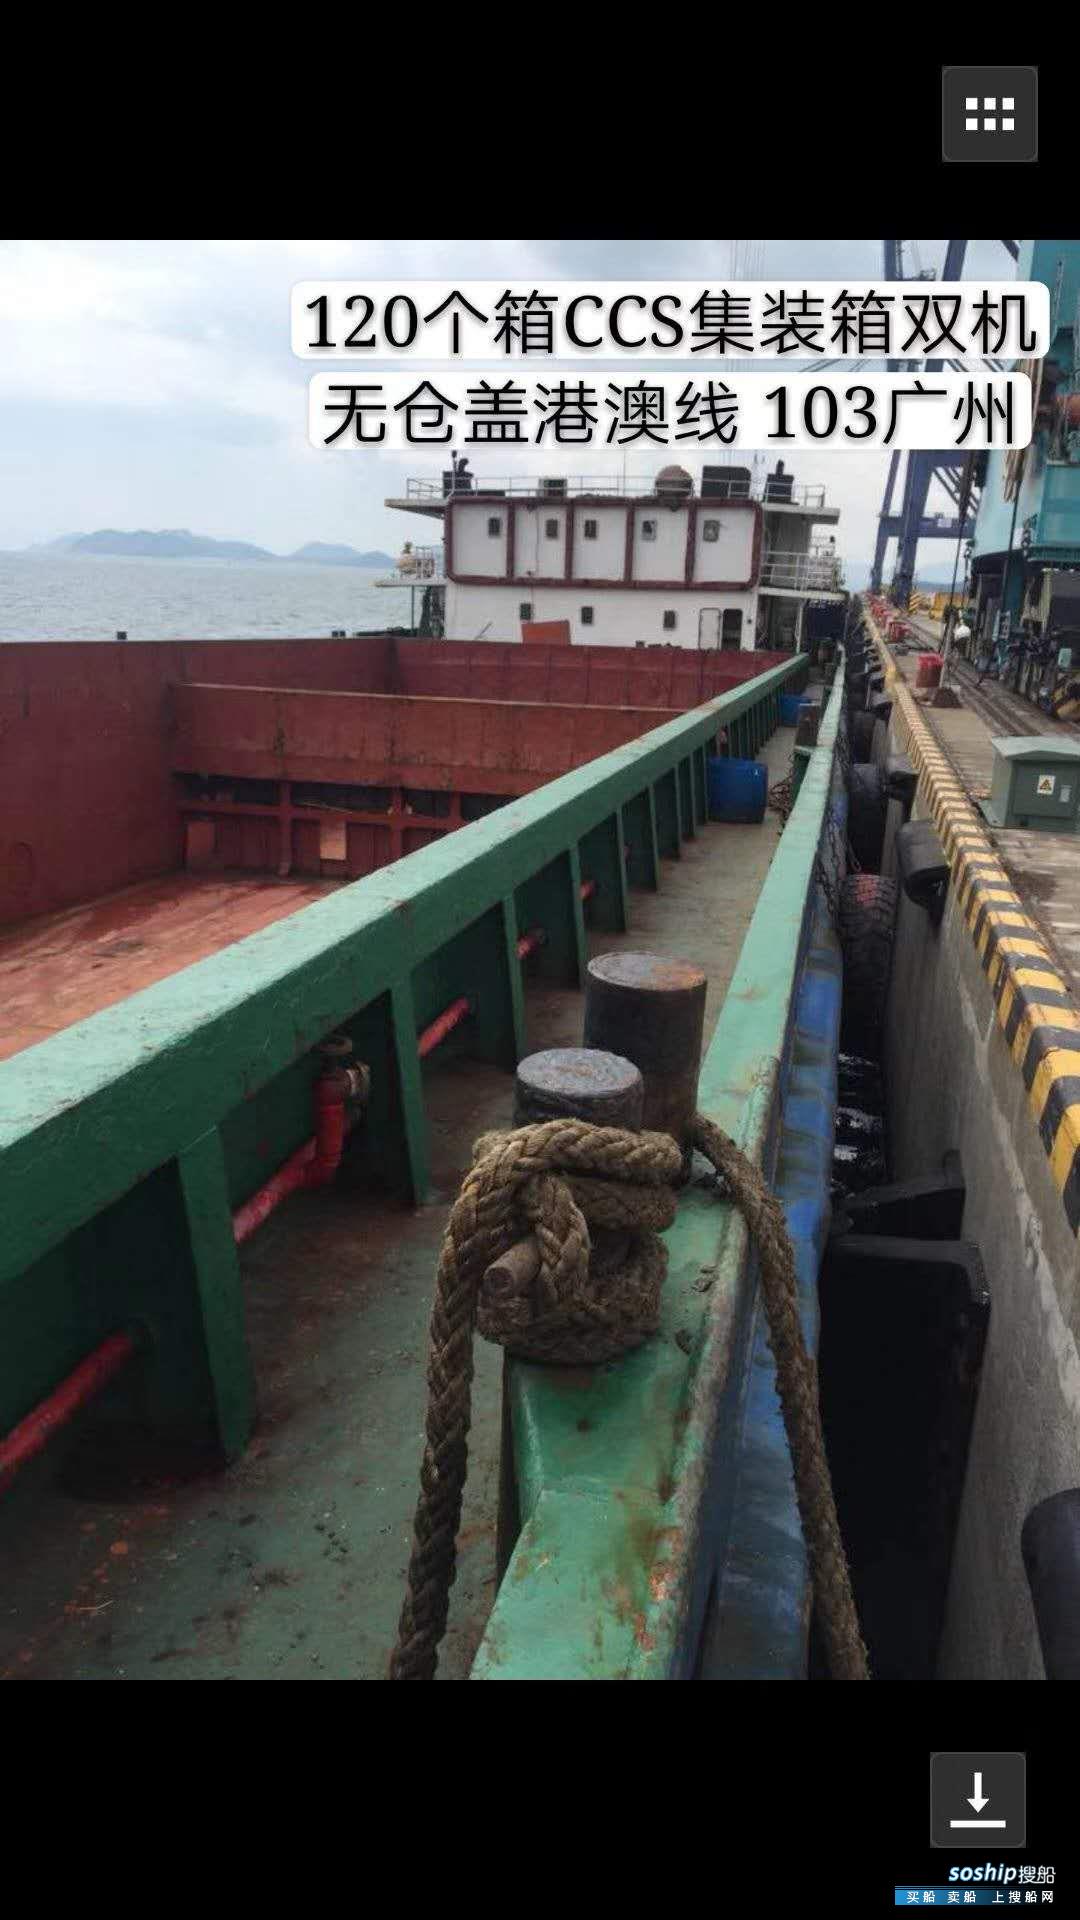 目前最大的集装箱船 出售998吨集装箱船